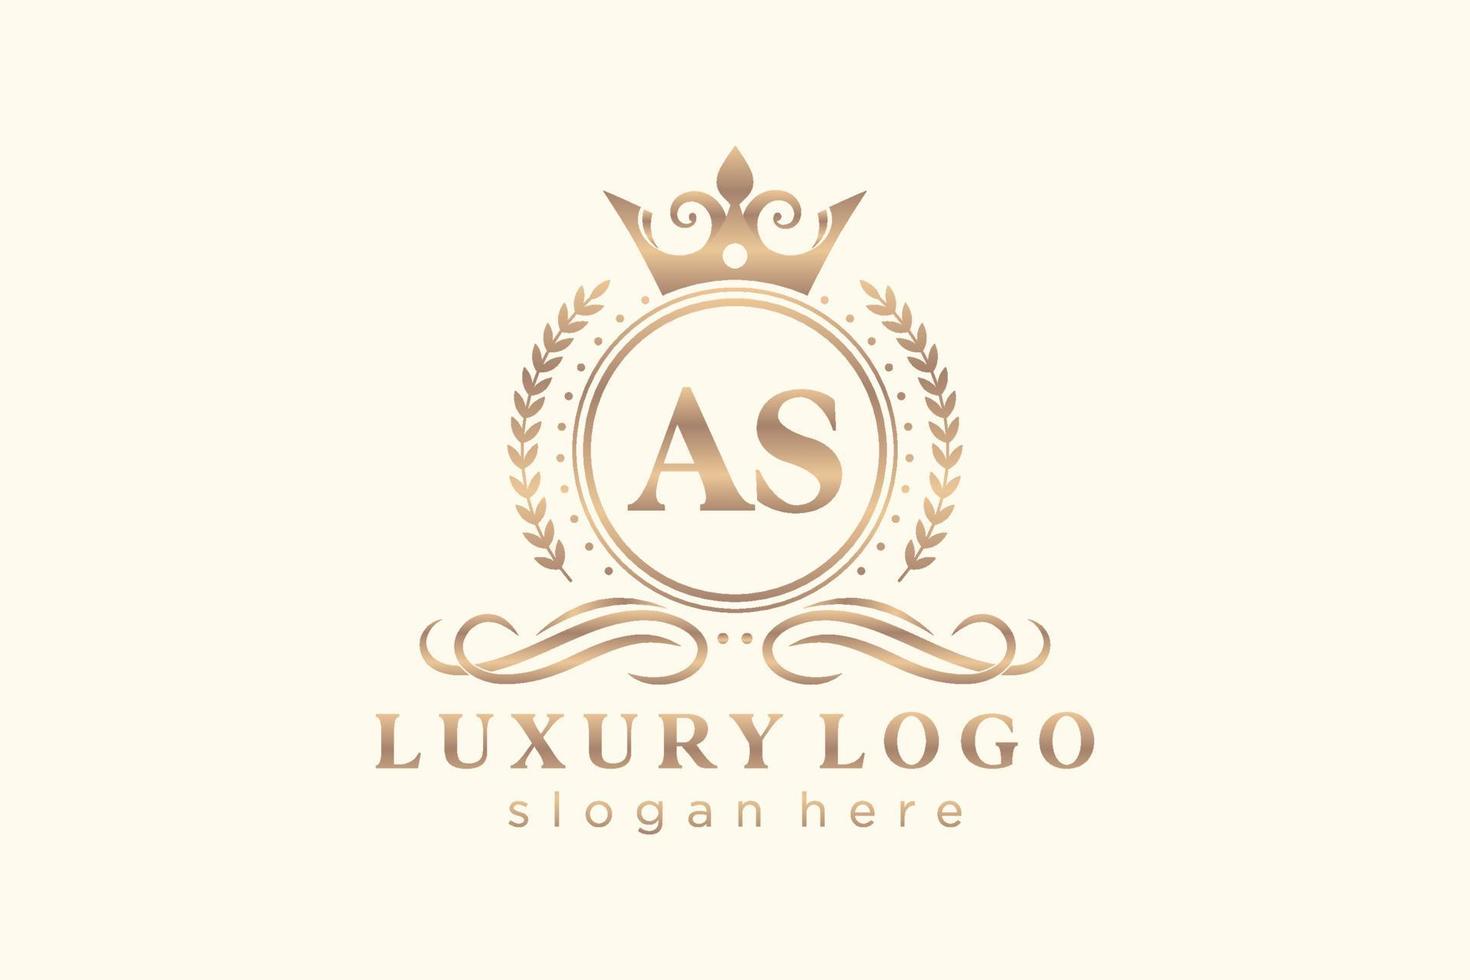 Initiale als Buchstabe königliche Luxus-Logo-Vorlage in Vektorgrafiken für Restaurant, Lizenzgebühren, Boutique, Café, Hotel, heraldisch, Schmuck, Mode und andere Vektorillustrationen. vektor